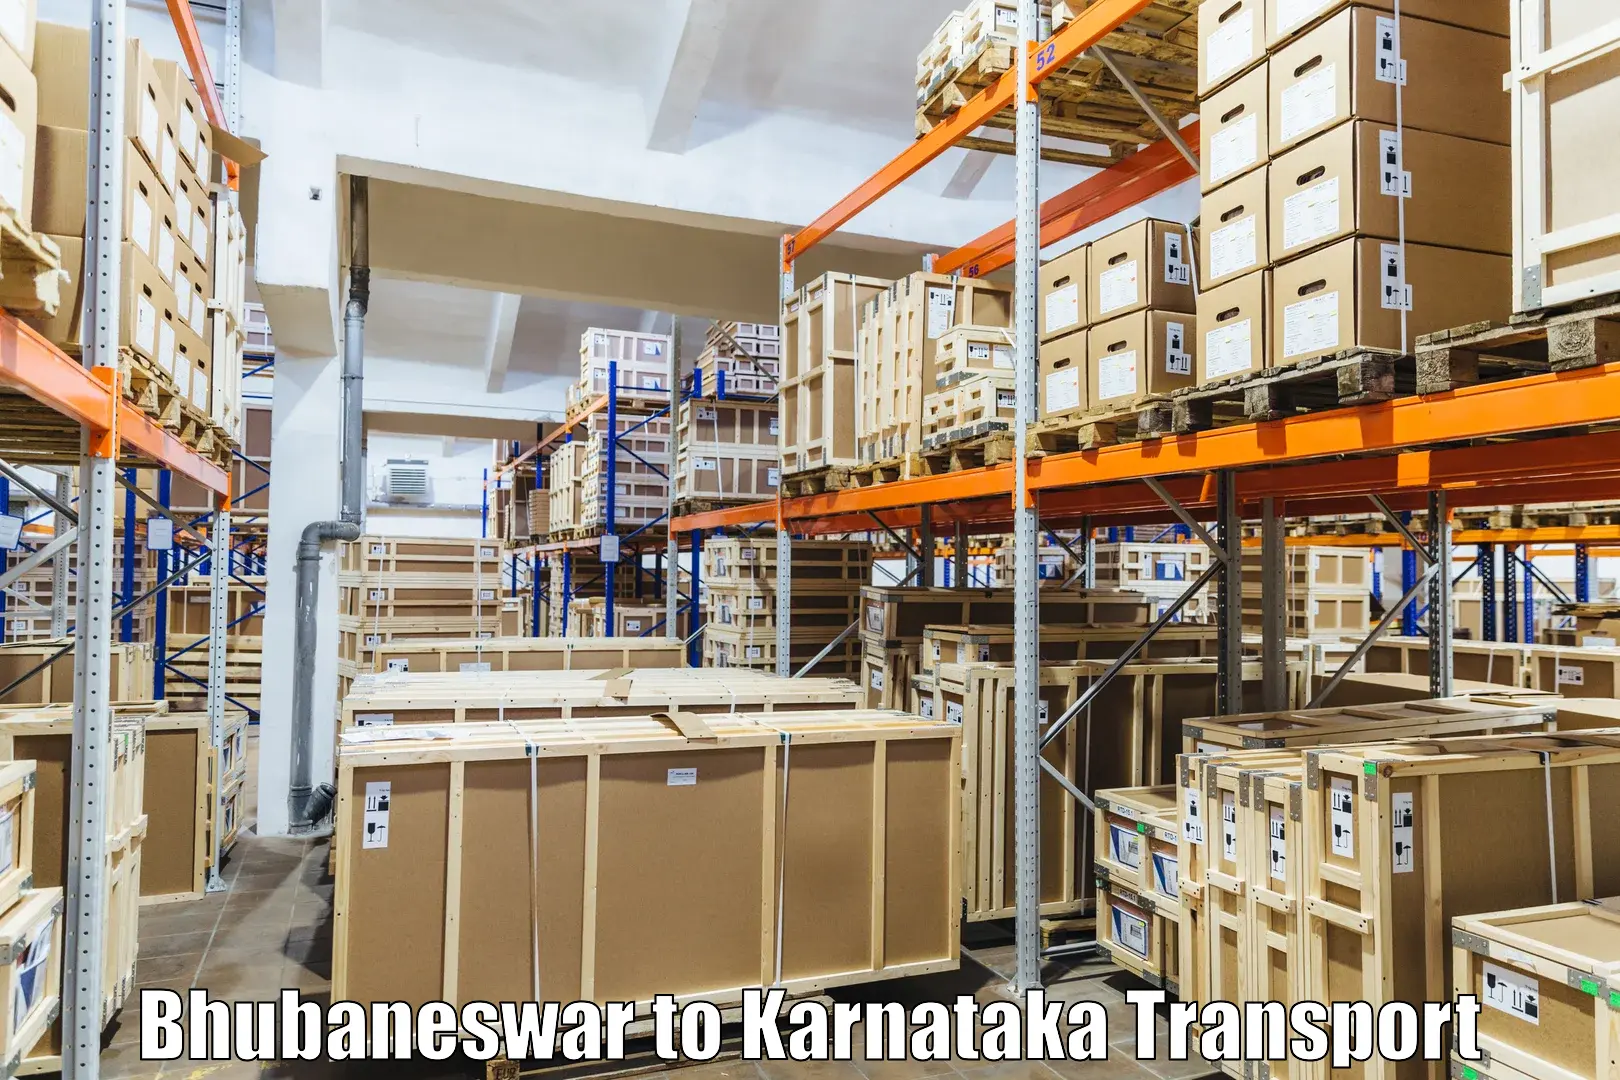 Online transport service Bhubaneswar to Bangalore